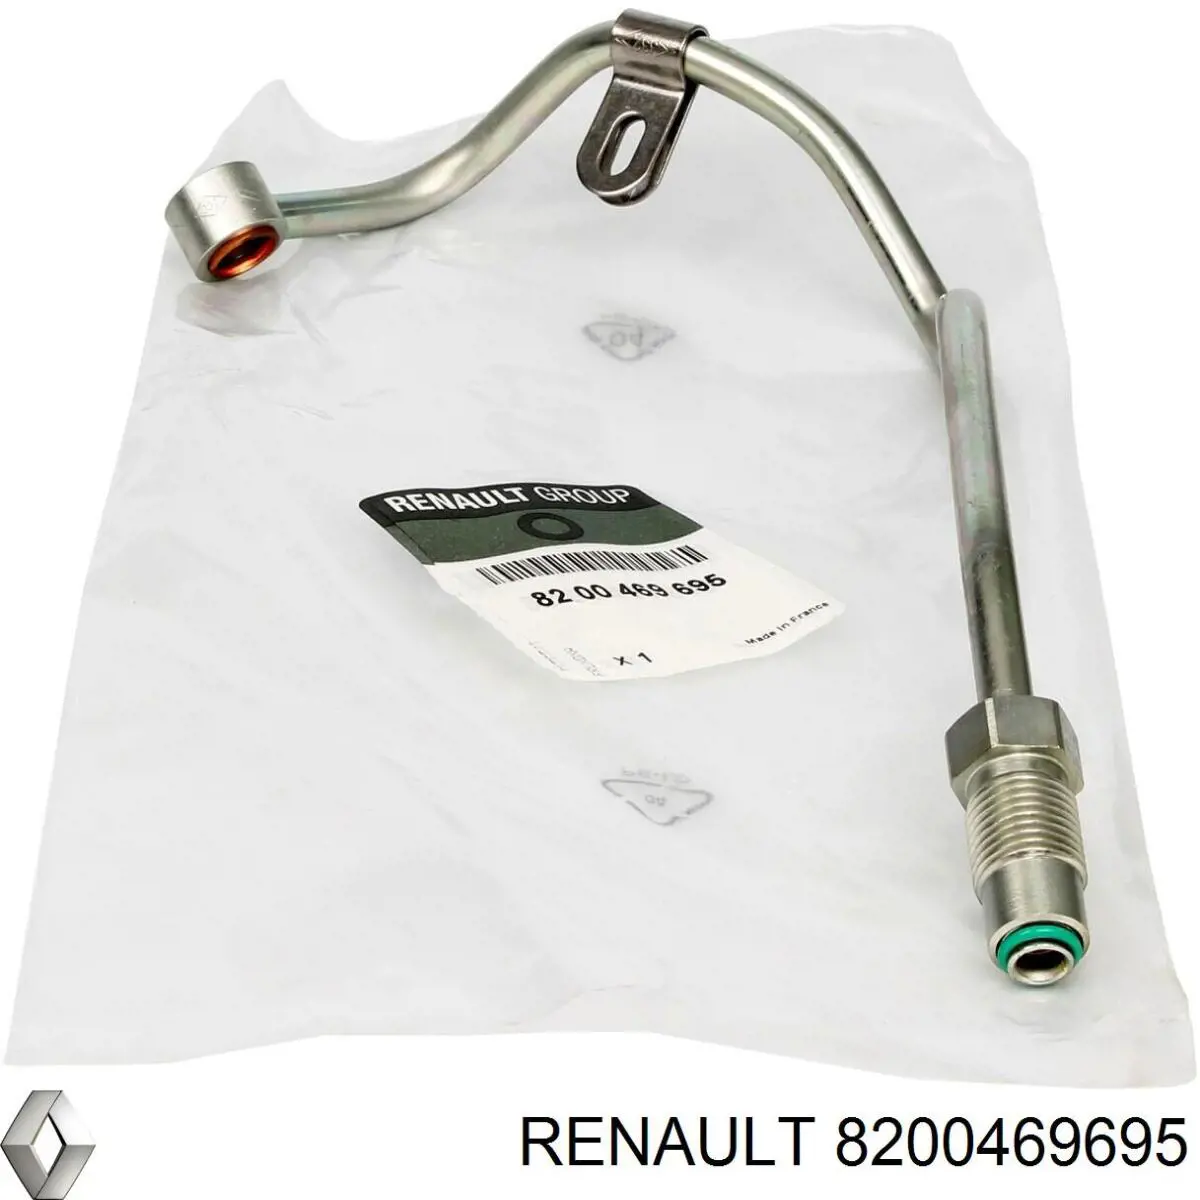 8200469695 Renault (RVI) tubo (manguera Para El Suministro De Aceite A La Turbina)